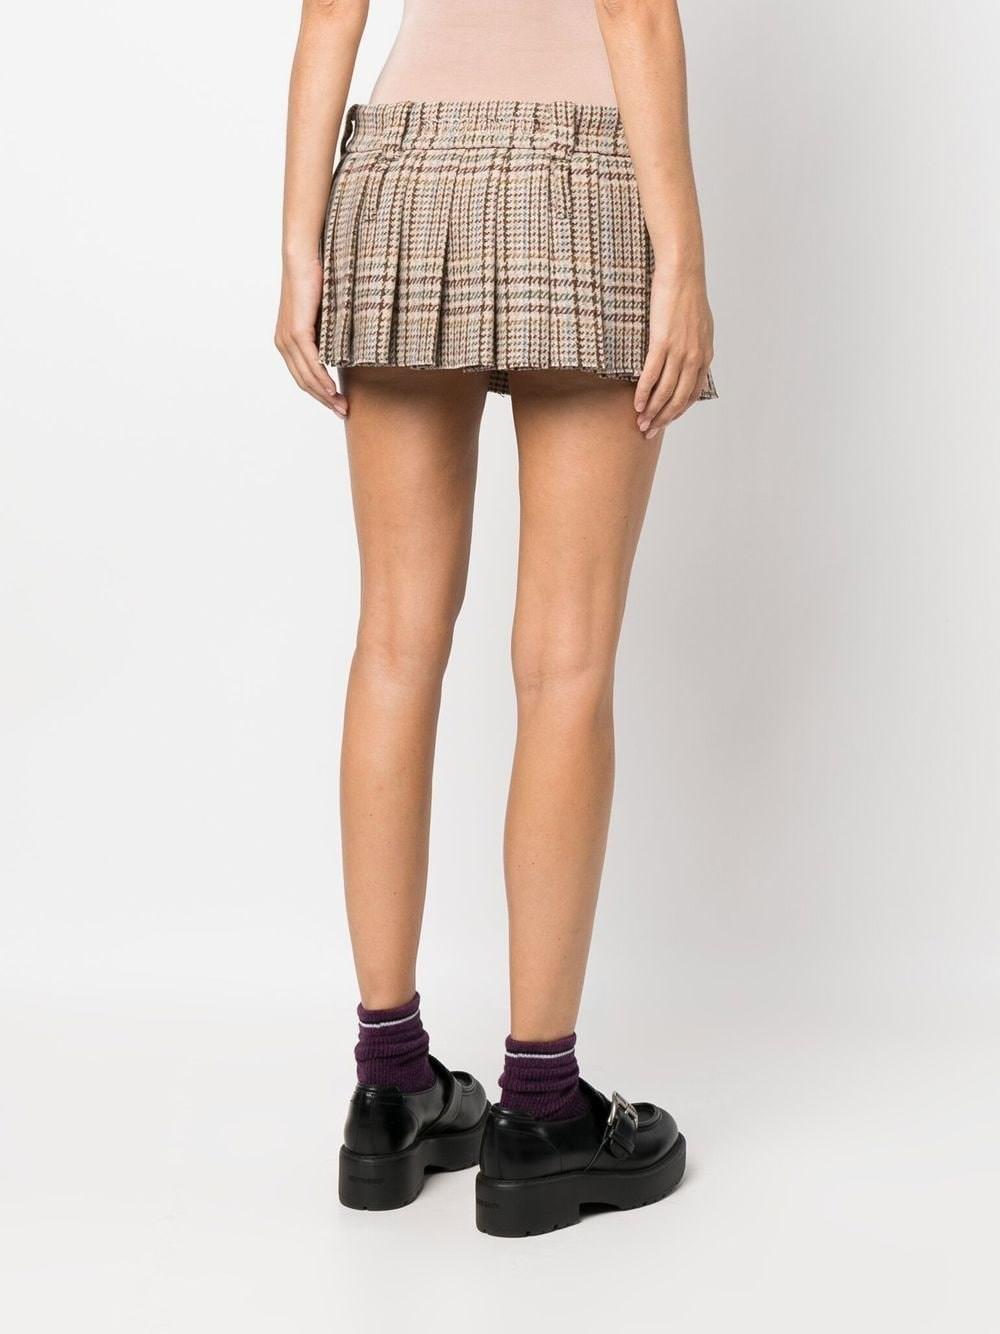 Miu Miu Neutral Pleated Tartan Mini Skirt - Women's - Virgin Wool in Brown